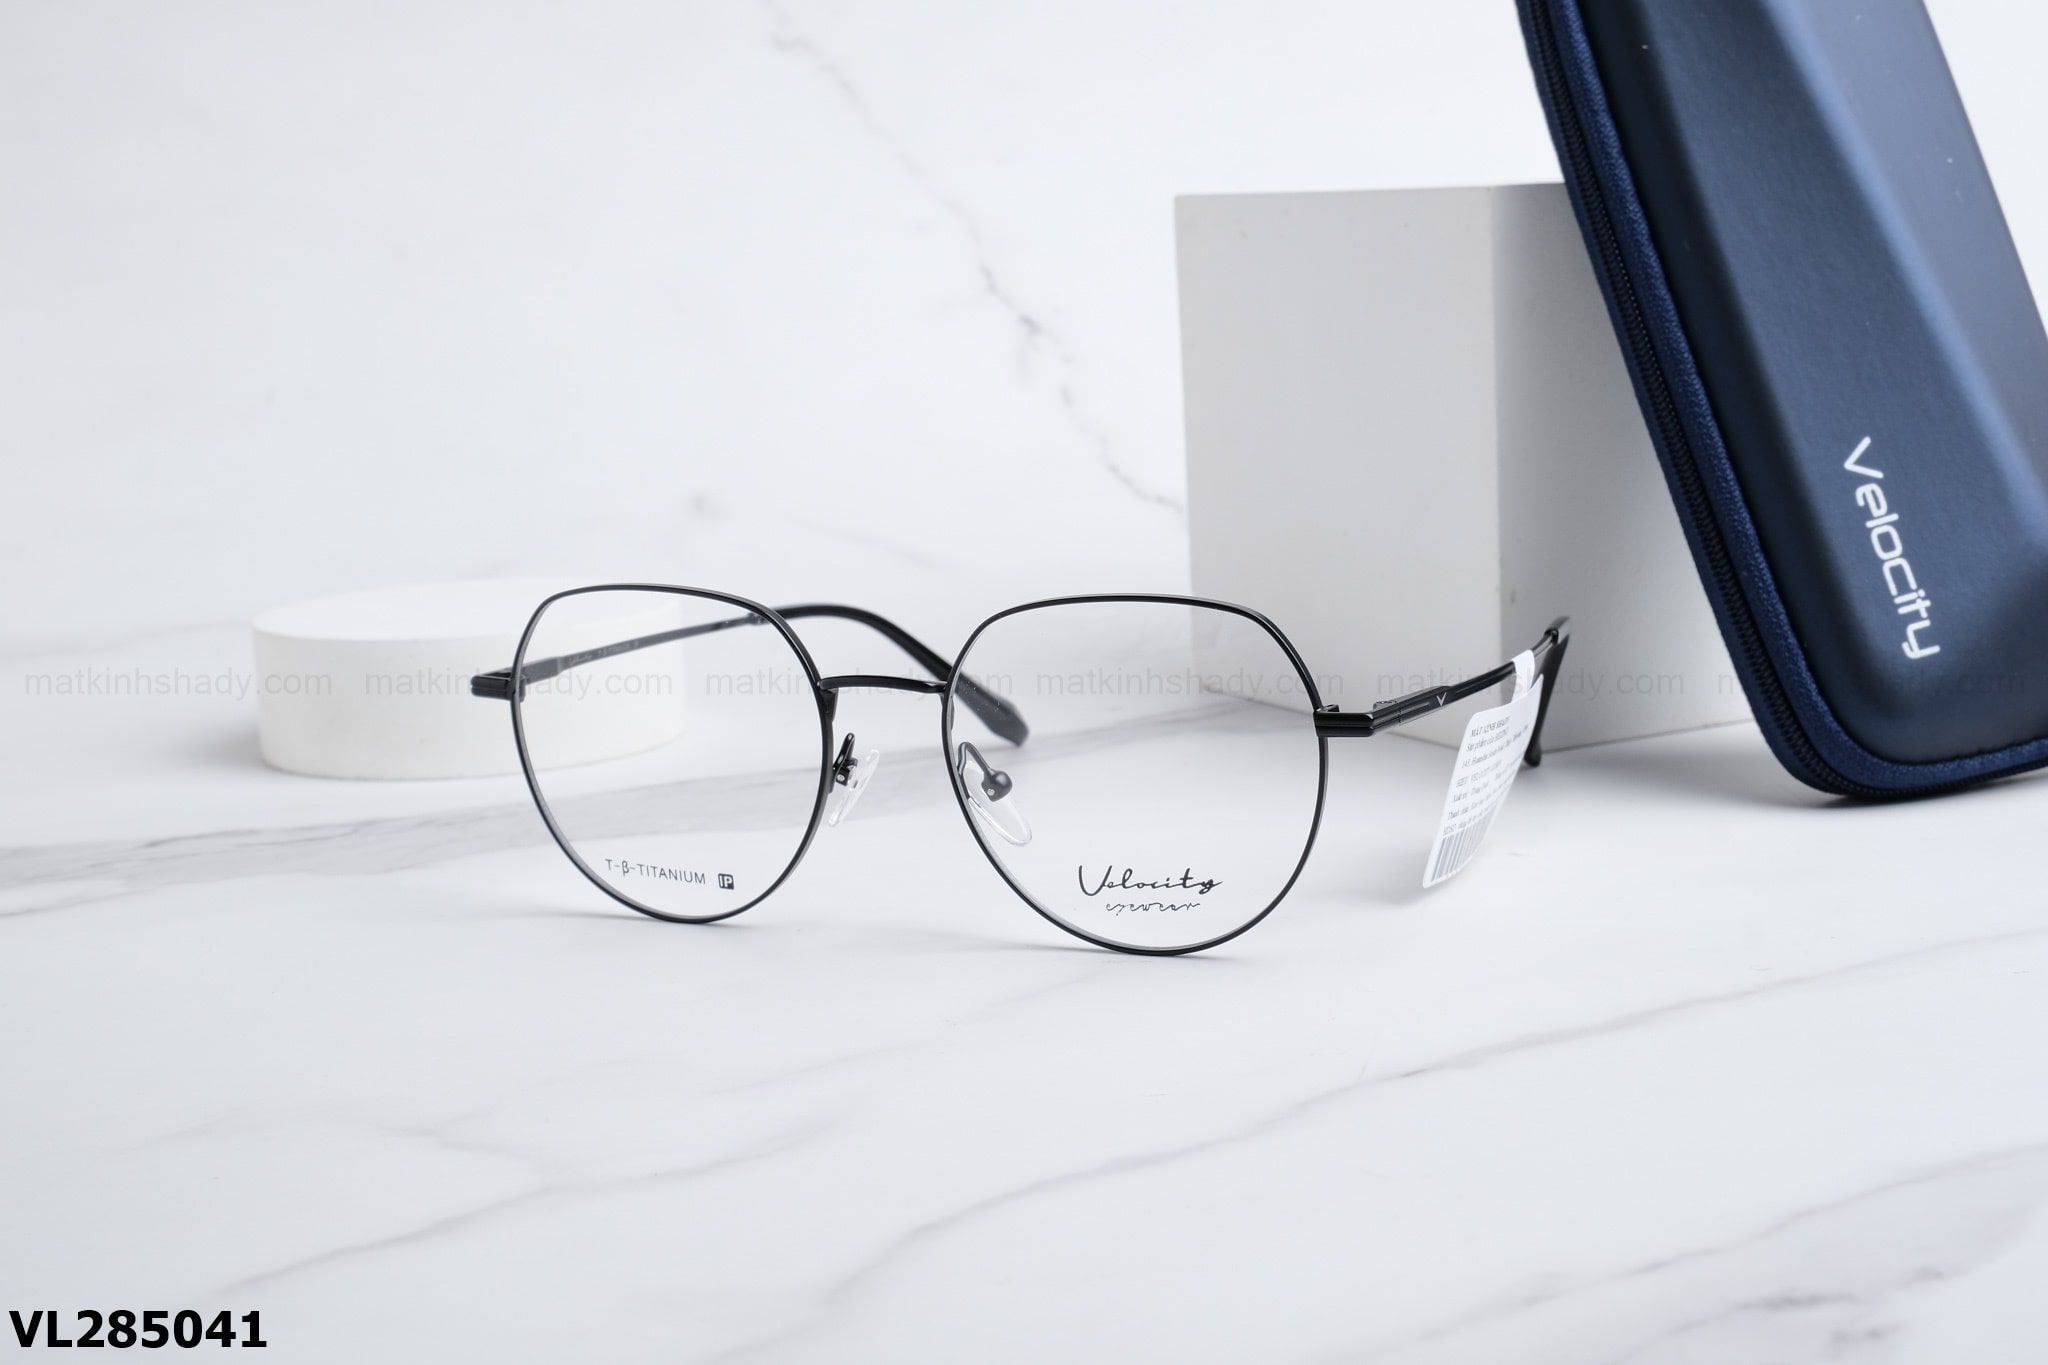  Velocity Eyewear - Glasses - VL285041 